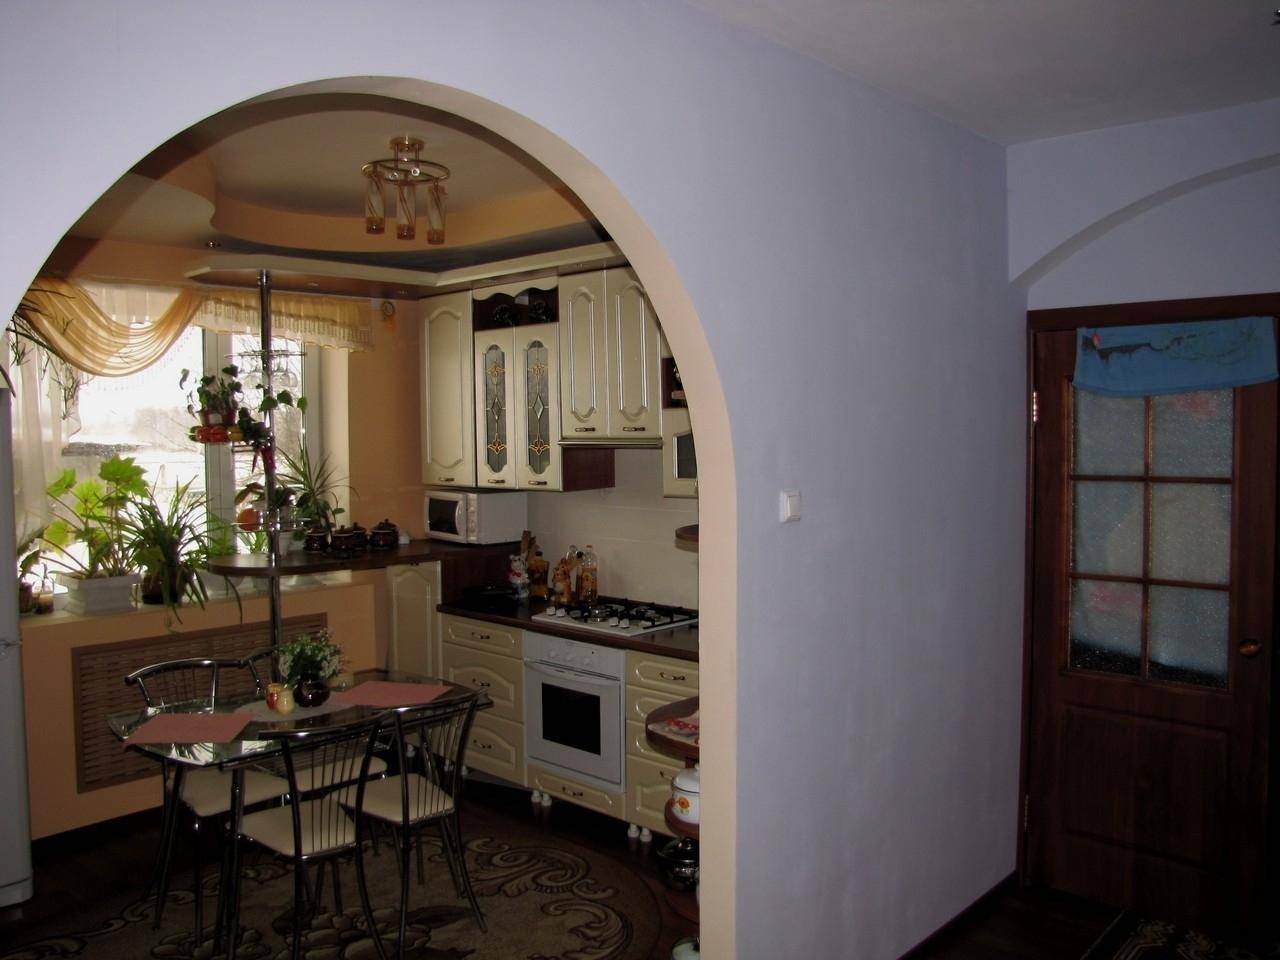 Арка на кухню вместо двери: 115+ (фото) дизайна между комнатами